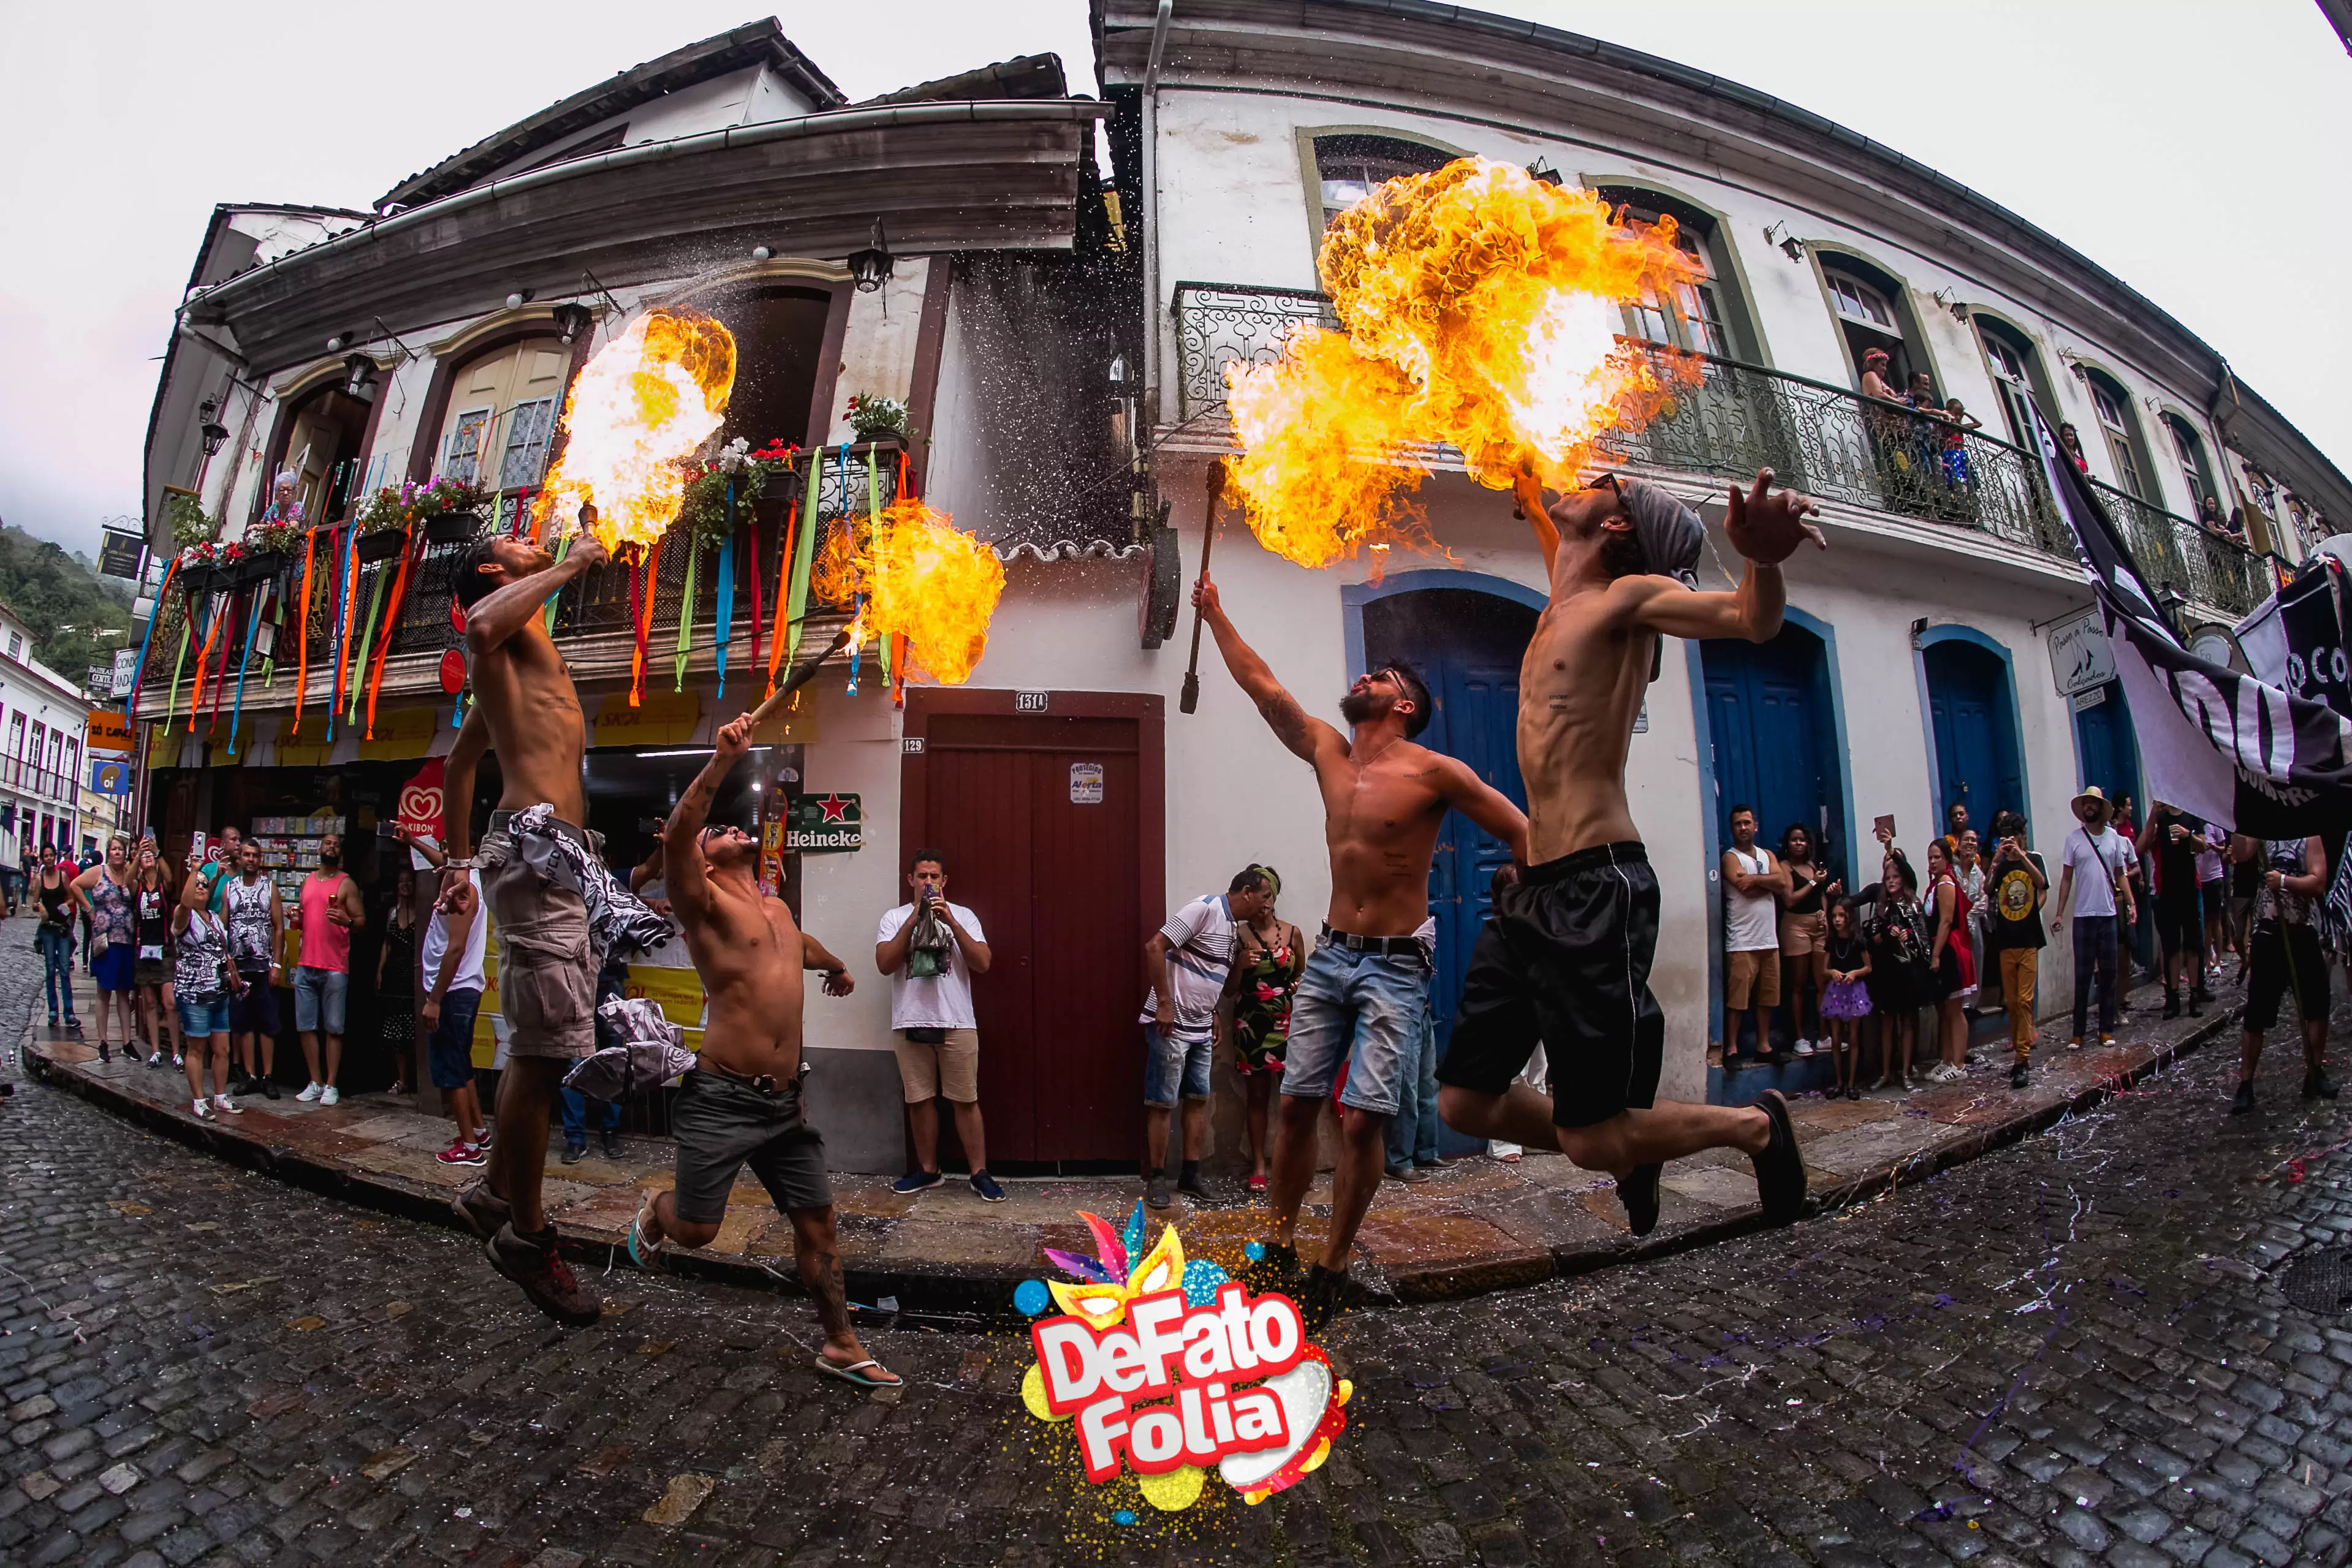 O Carnaval de Ouro Preto em fotos incríveis